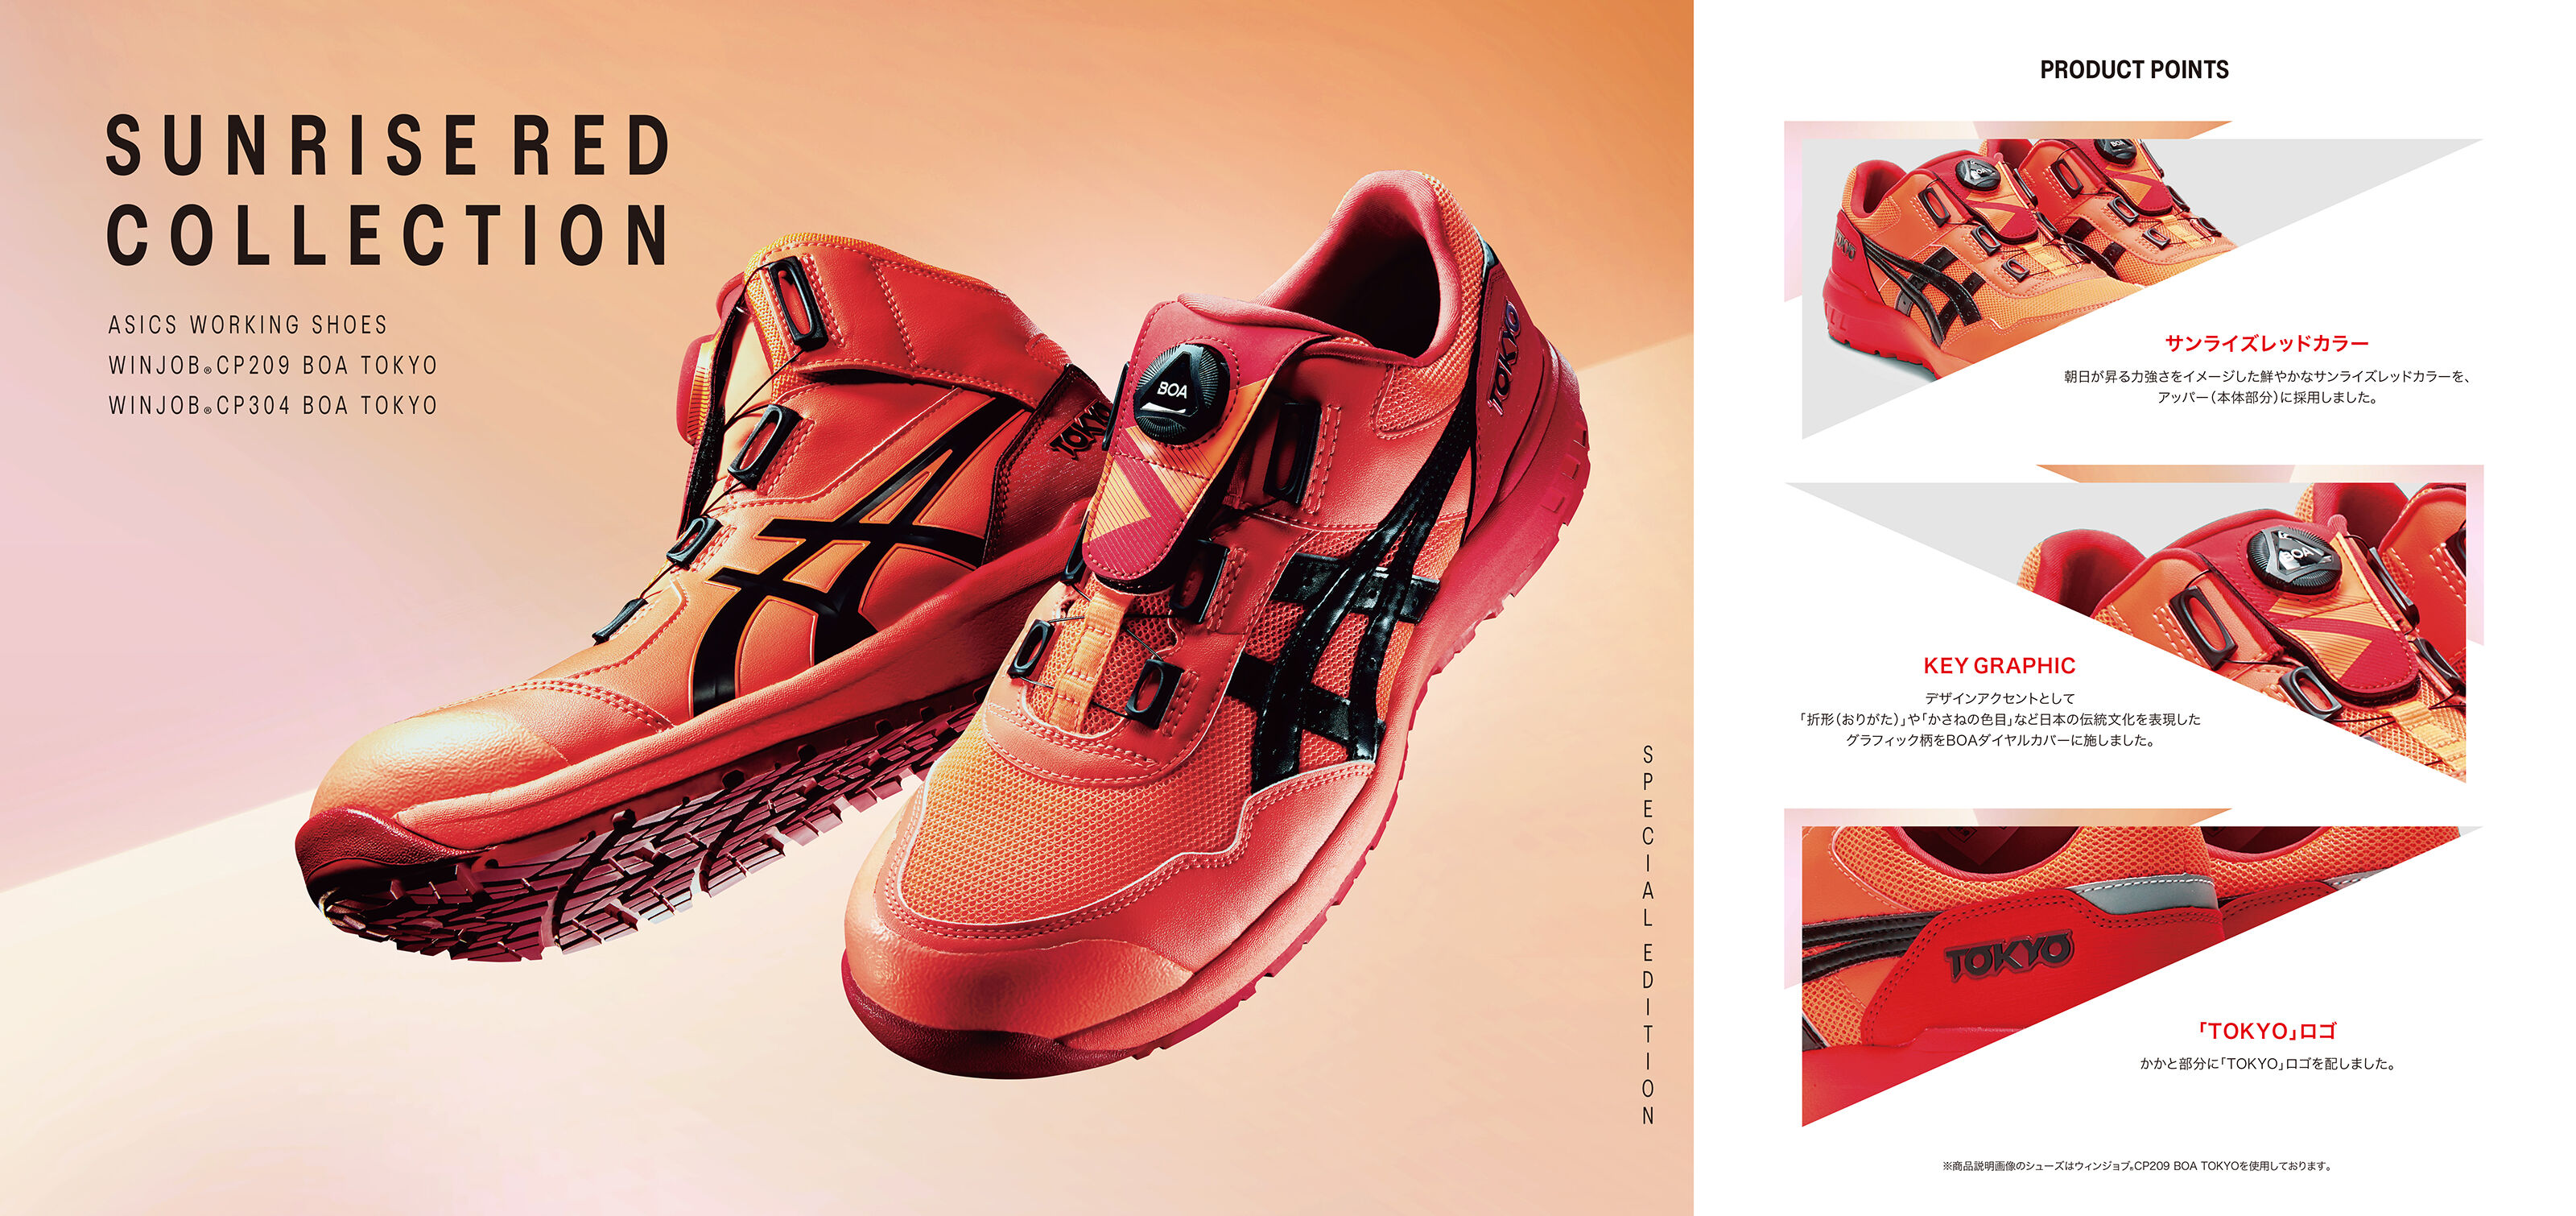 ウィンジョブ Cp9 Boa Tokyo サンライズレッド ブラック ワーキングシューズ 作業靴 Asics